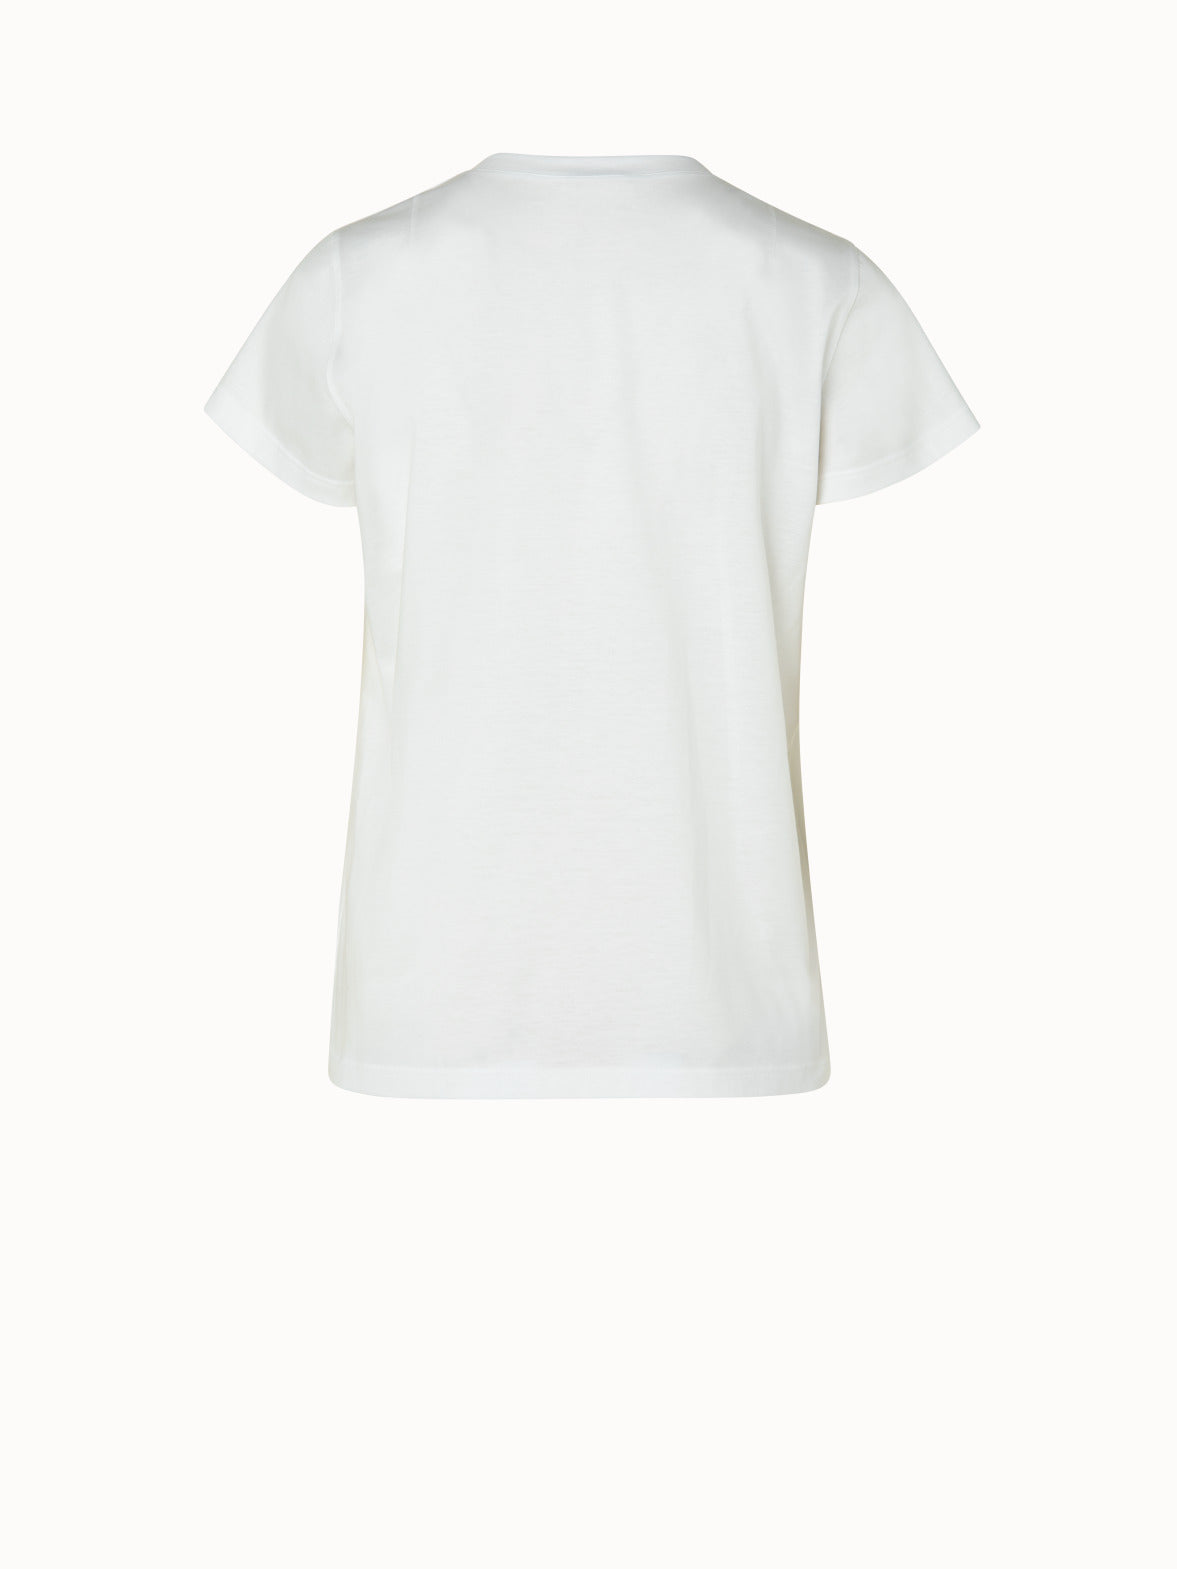 Bpc Bonprix Collection Women's T-Shirt S White Cotton with Elastane